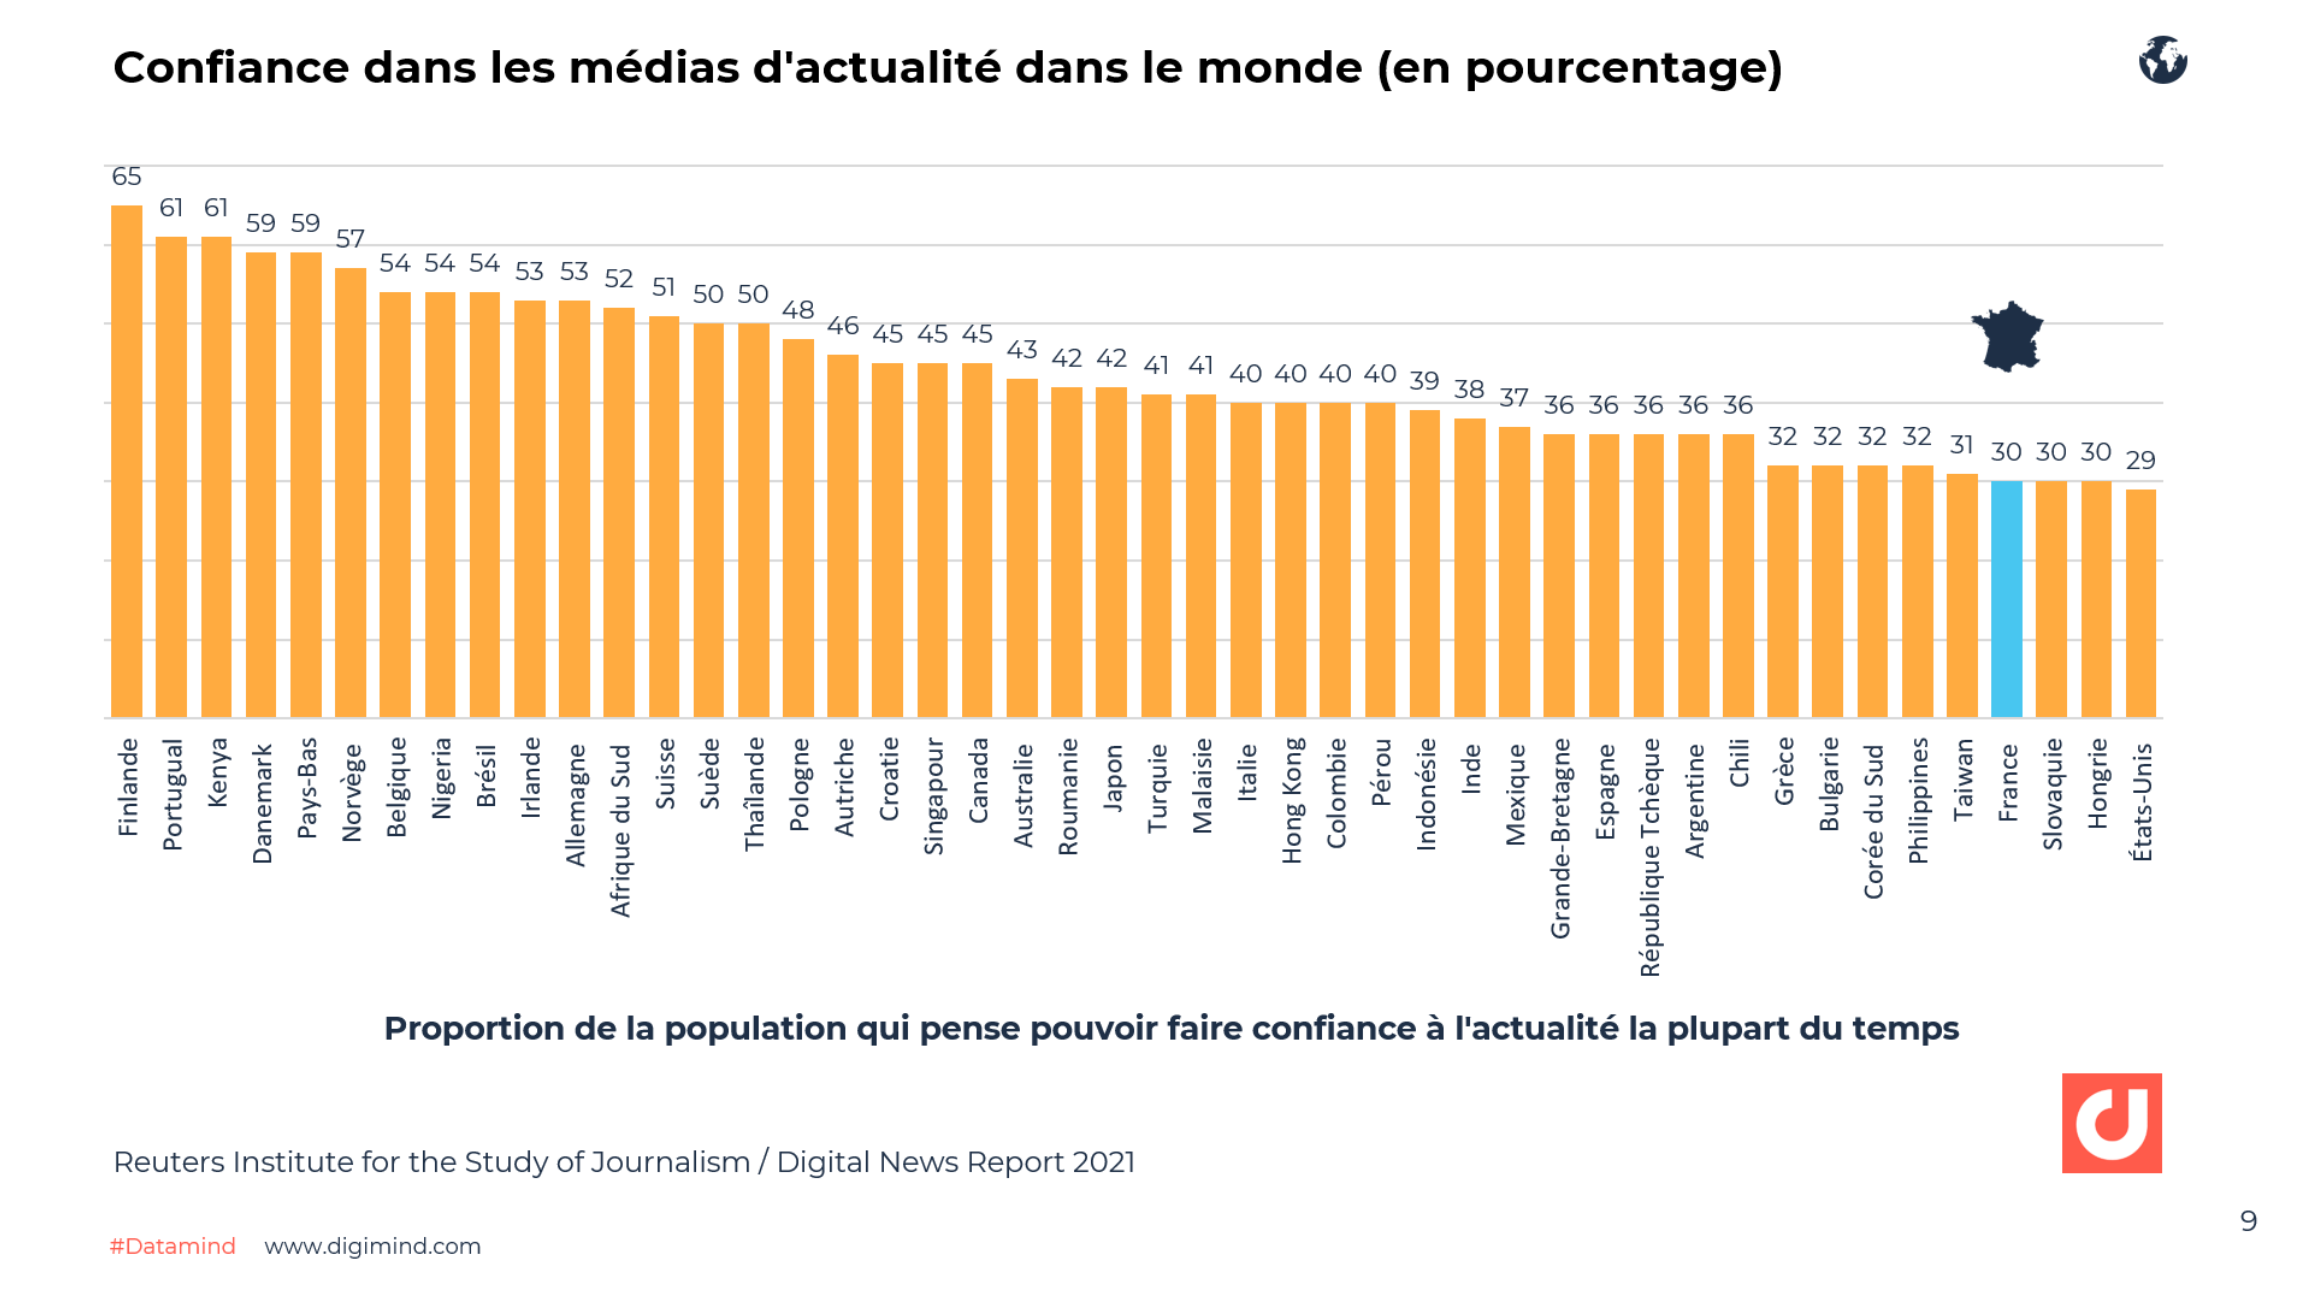 Confiance dans les médias d'actualité dans le monde (en pourcentage) - Digital News Report 2021